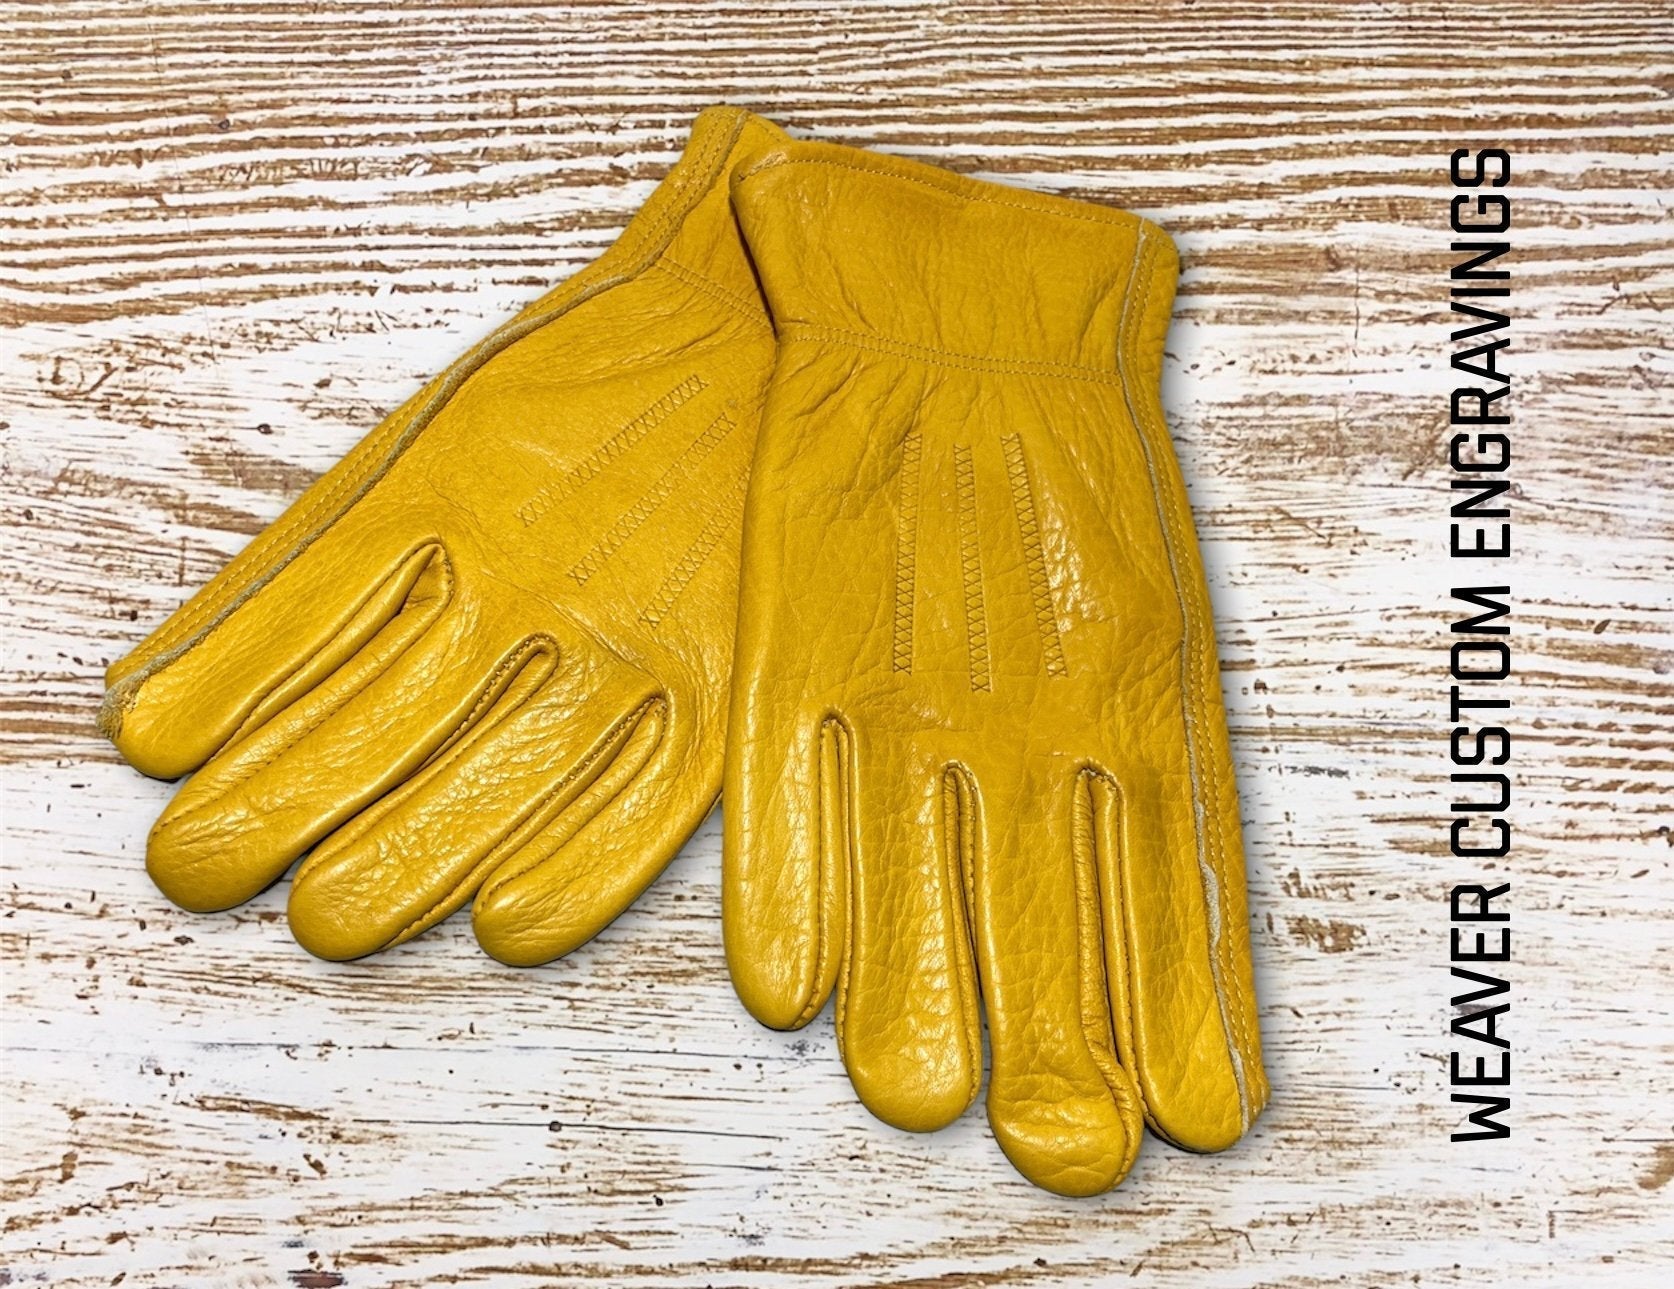 Work Gloves With Name Gloves weaver custom gloves   